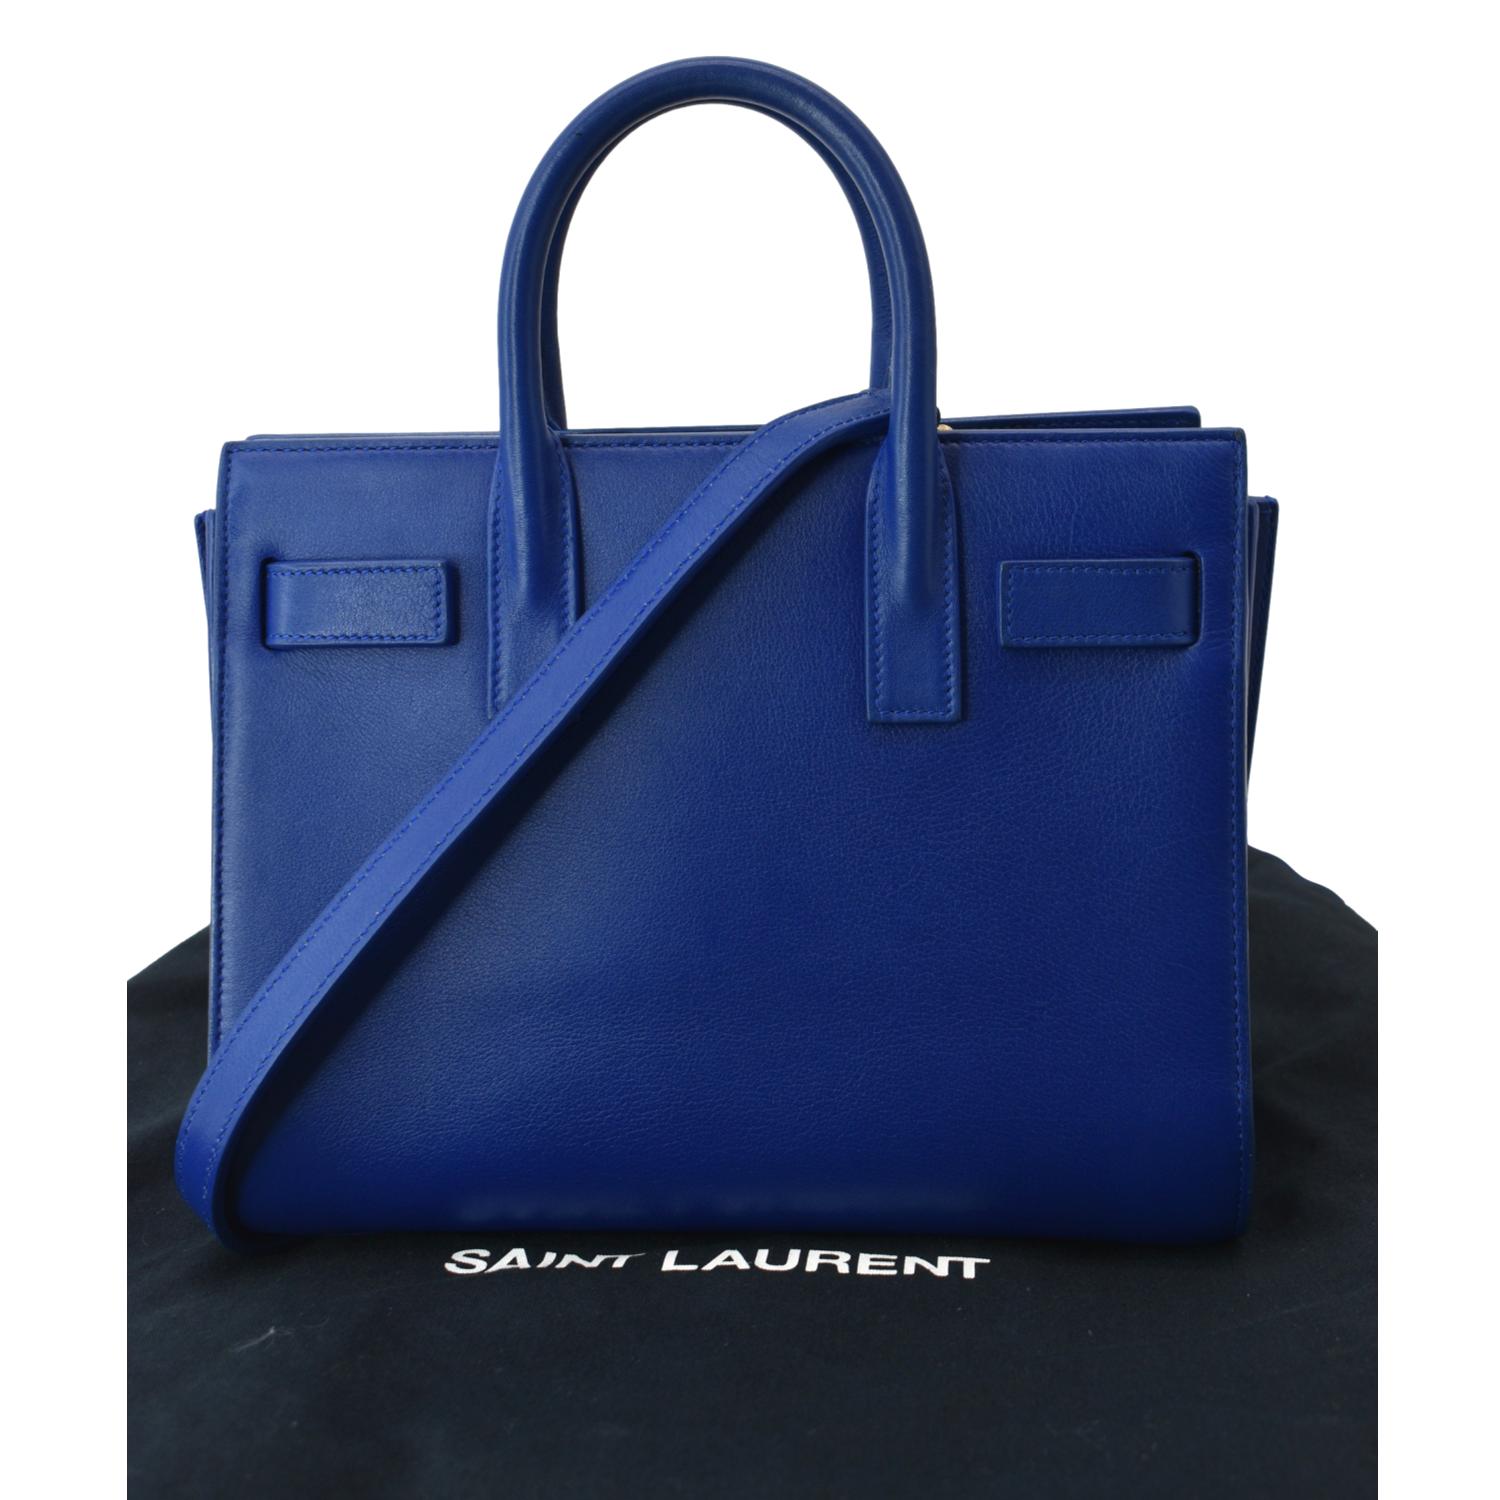 Yves Saint Laurent Sac de Jour Leather Satchel Shoulder Bag